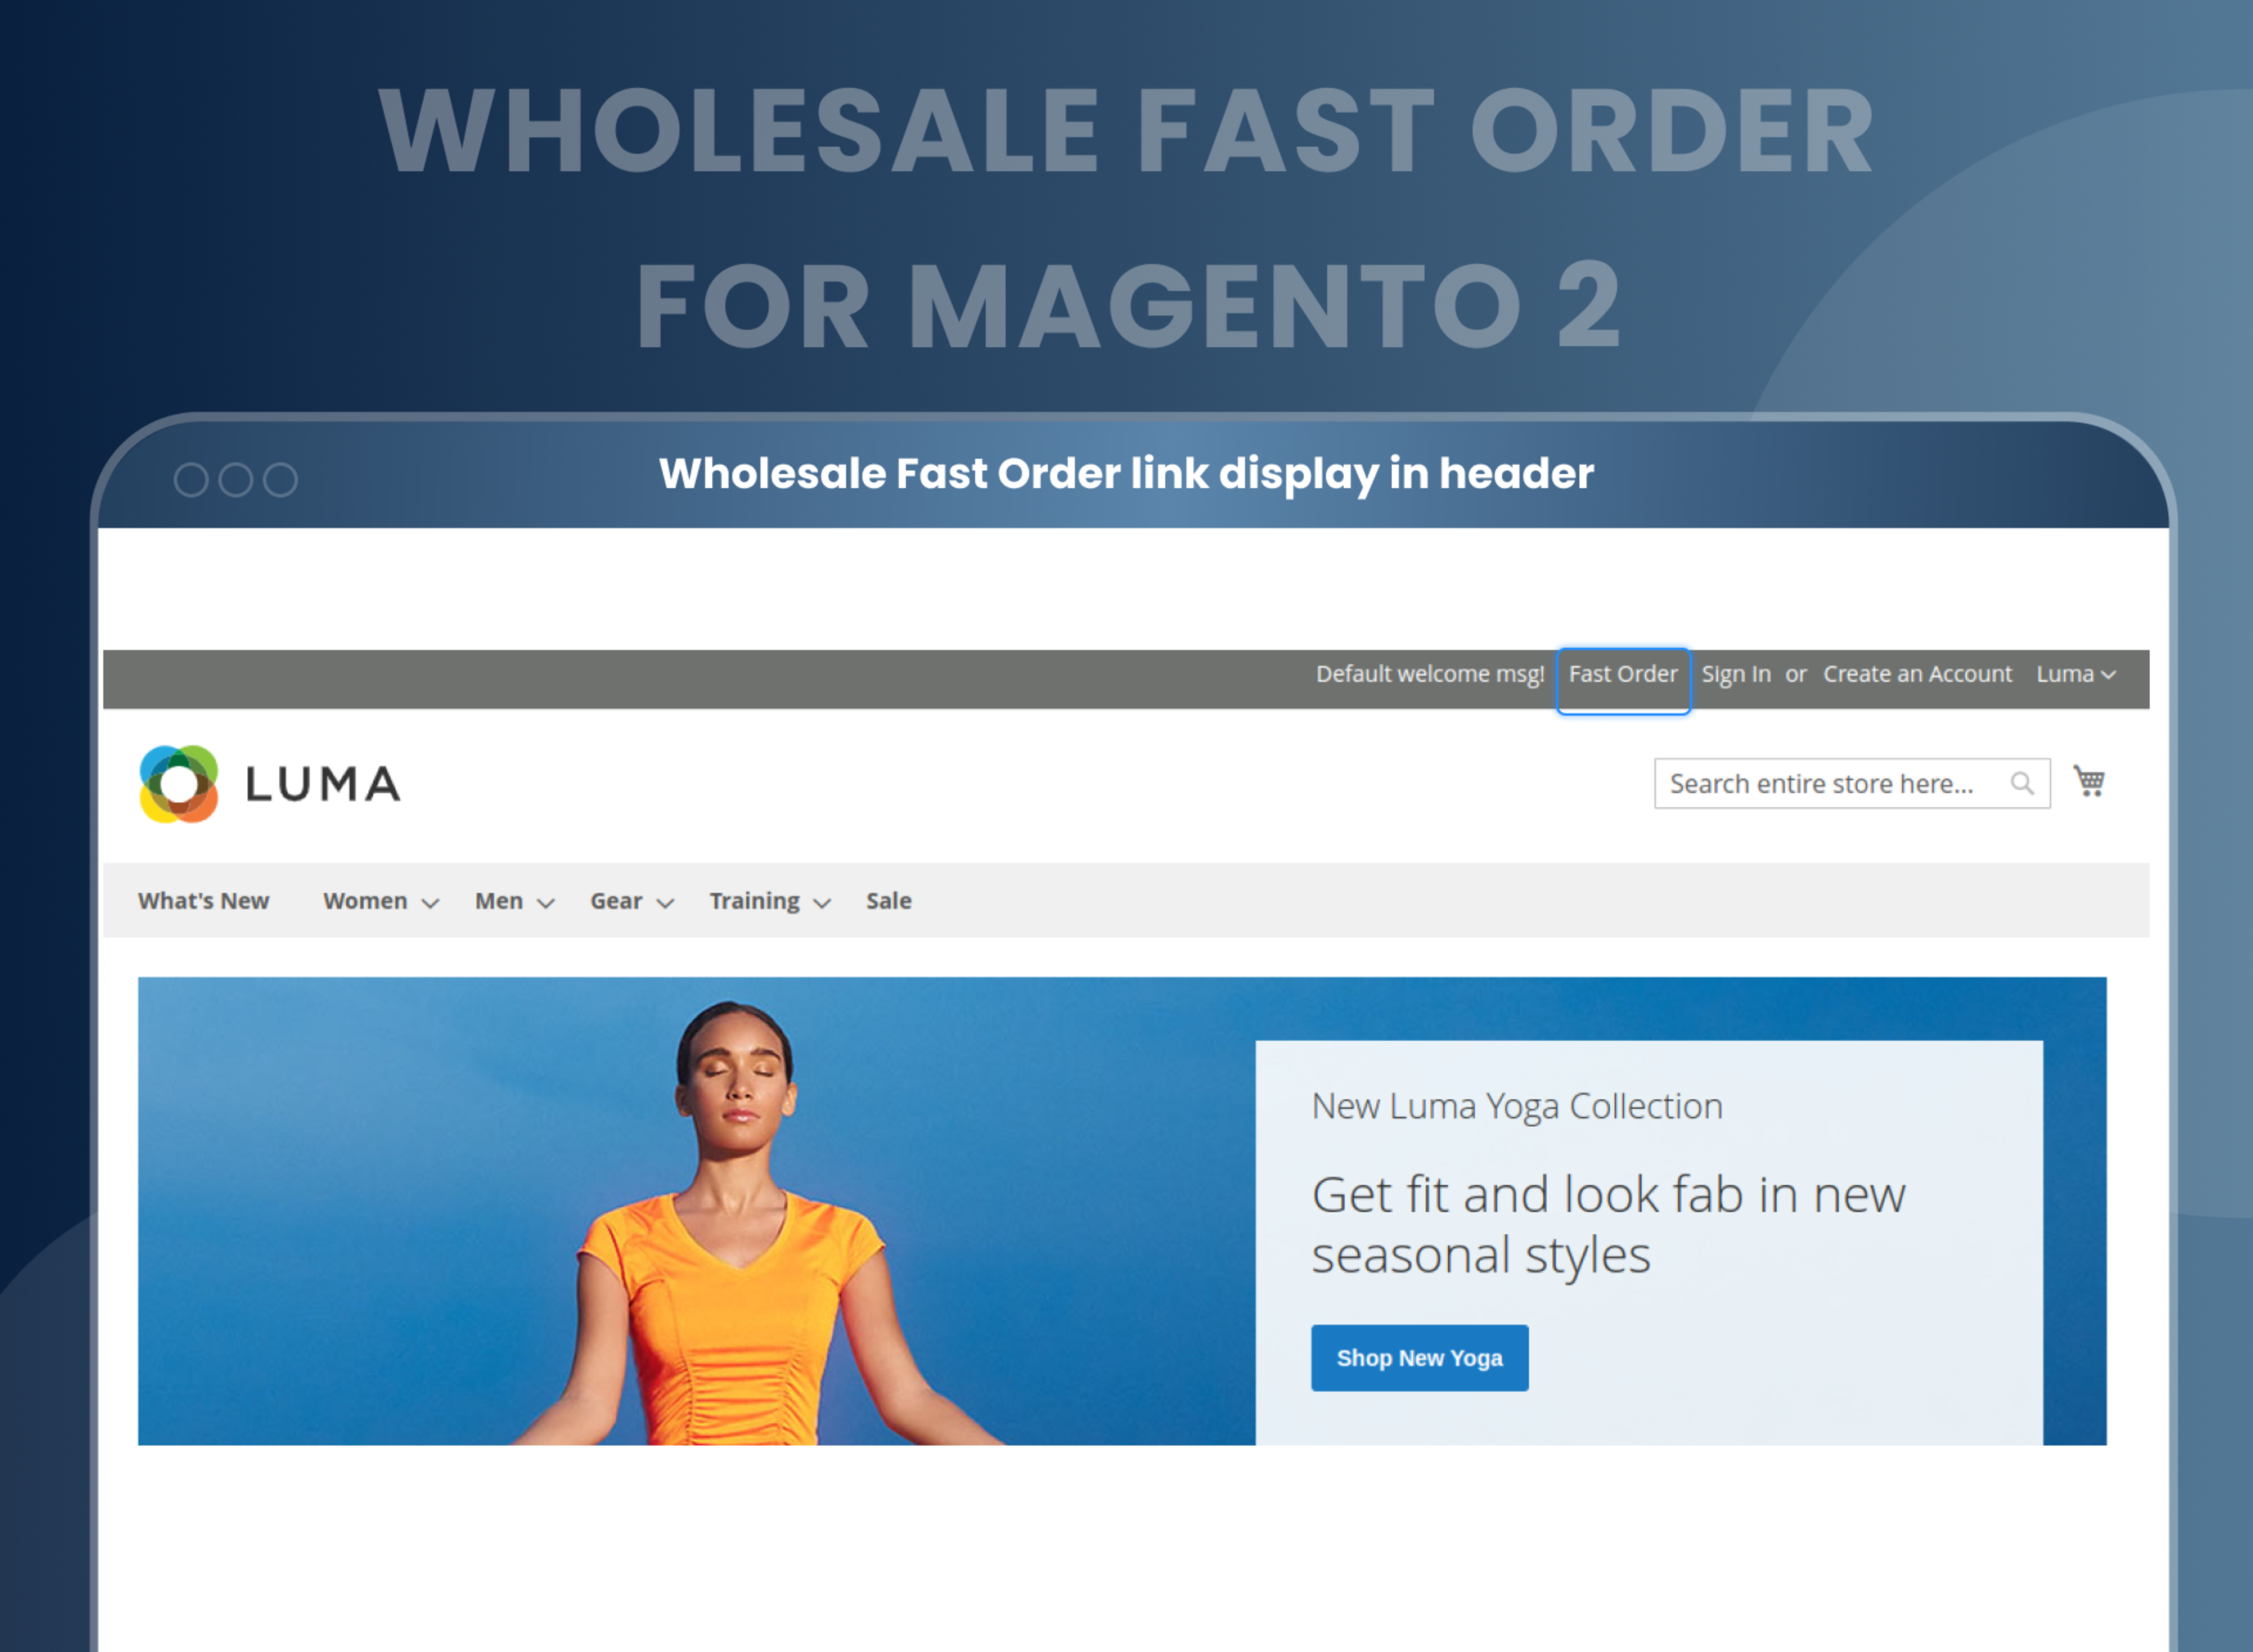 Wholesale Fast Order link display in header